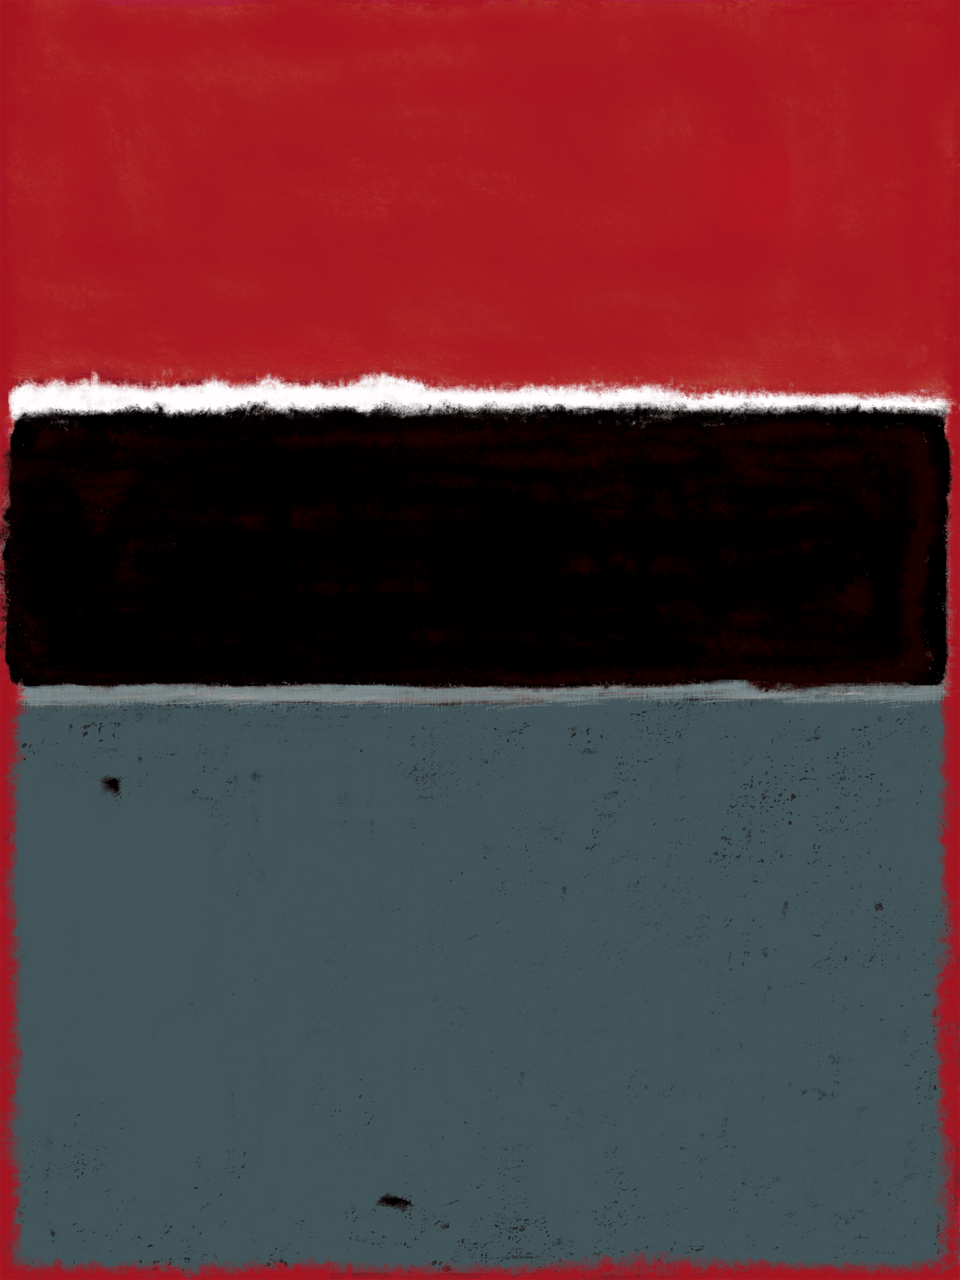  Paysage gris, peinture abstraite - Œuvres d'art  artiste peintre Ludwig Mario  galerie TACT Art abstrait & contemporain